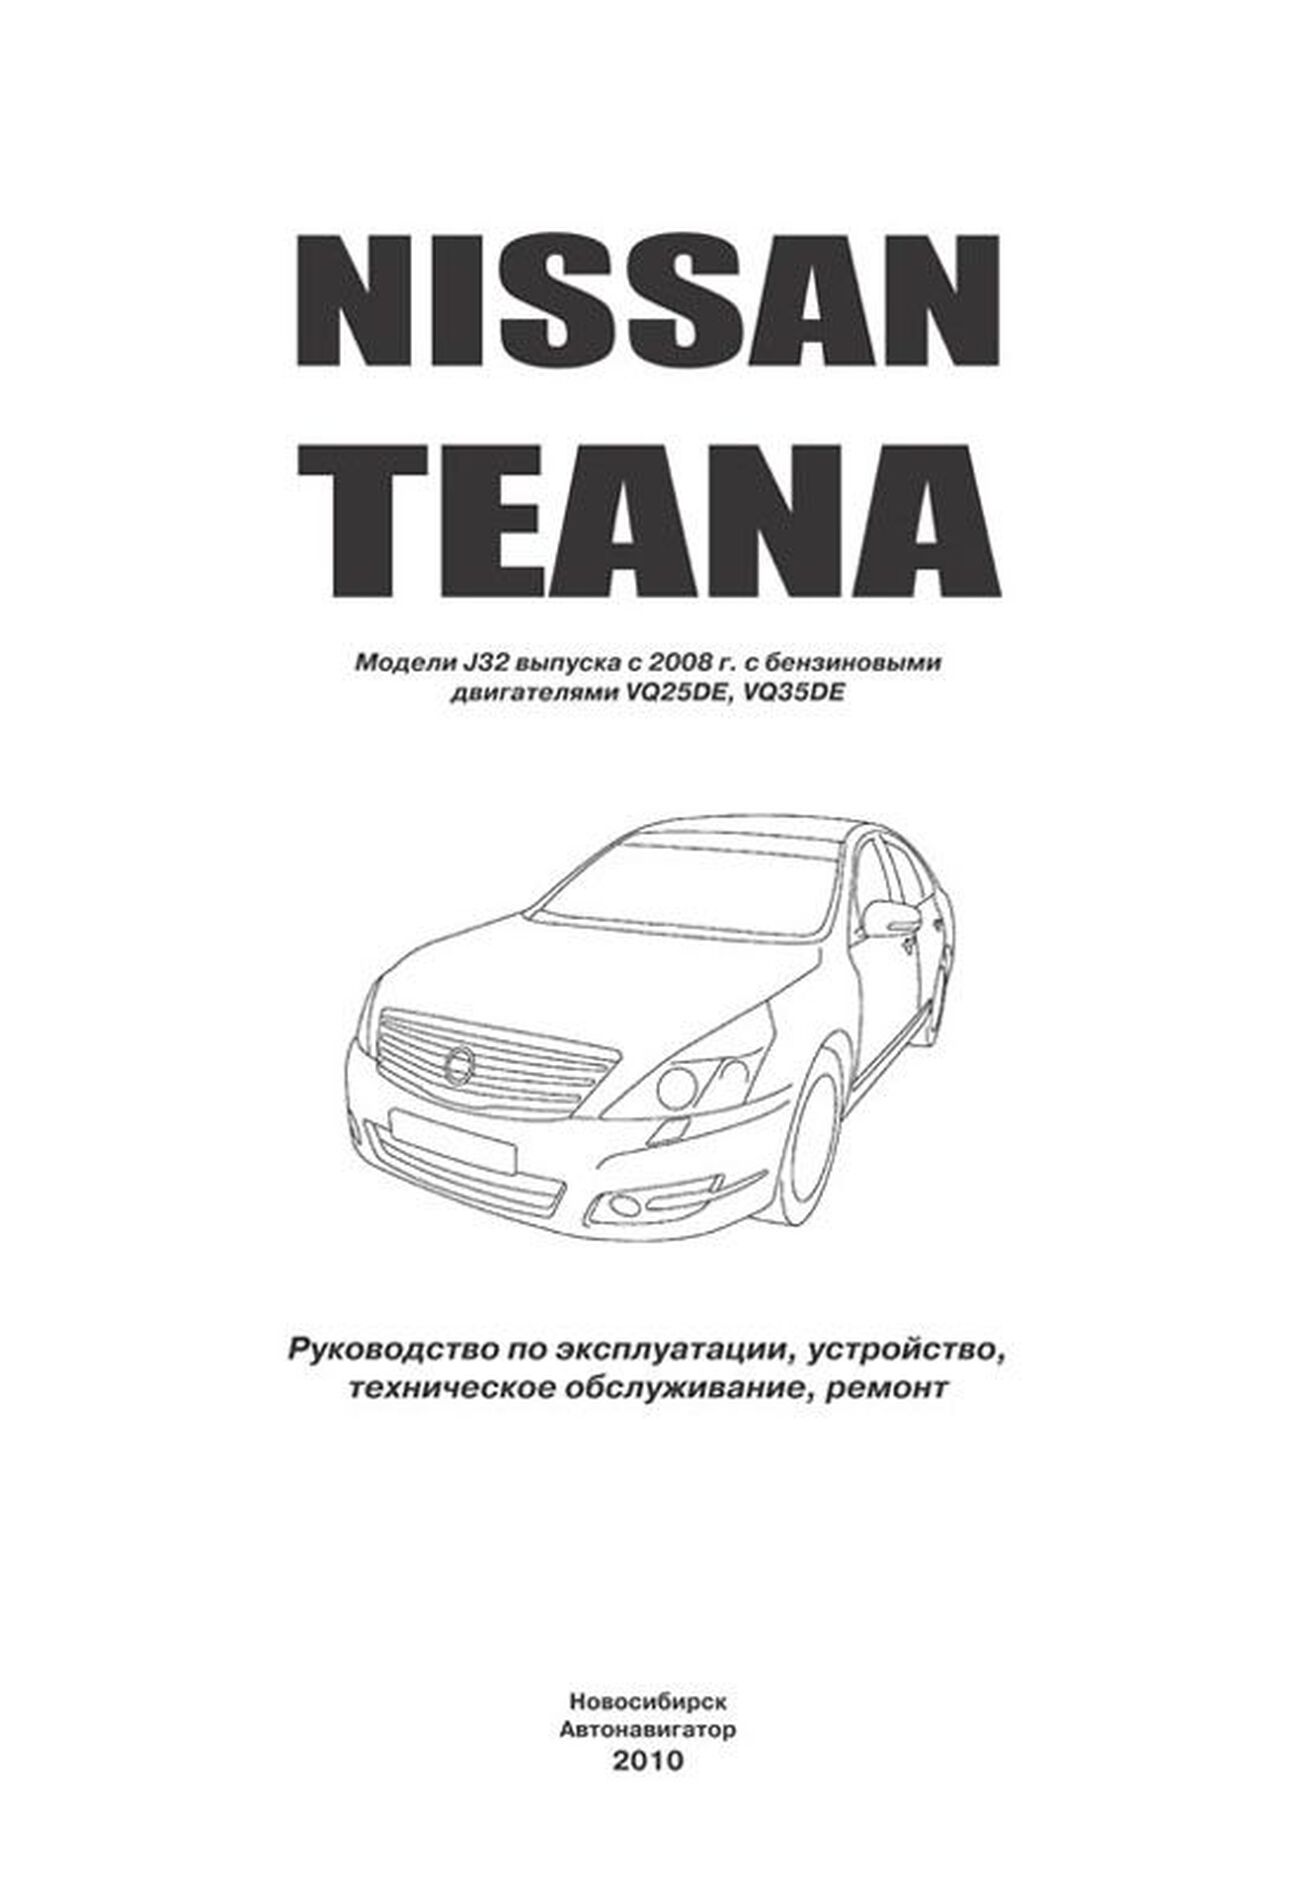 Книга: NISSAN TEANA J32 (б) с 2008 г.в., рем., экспл., то | Автонавигатор